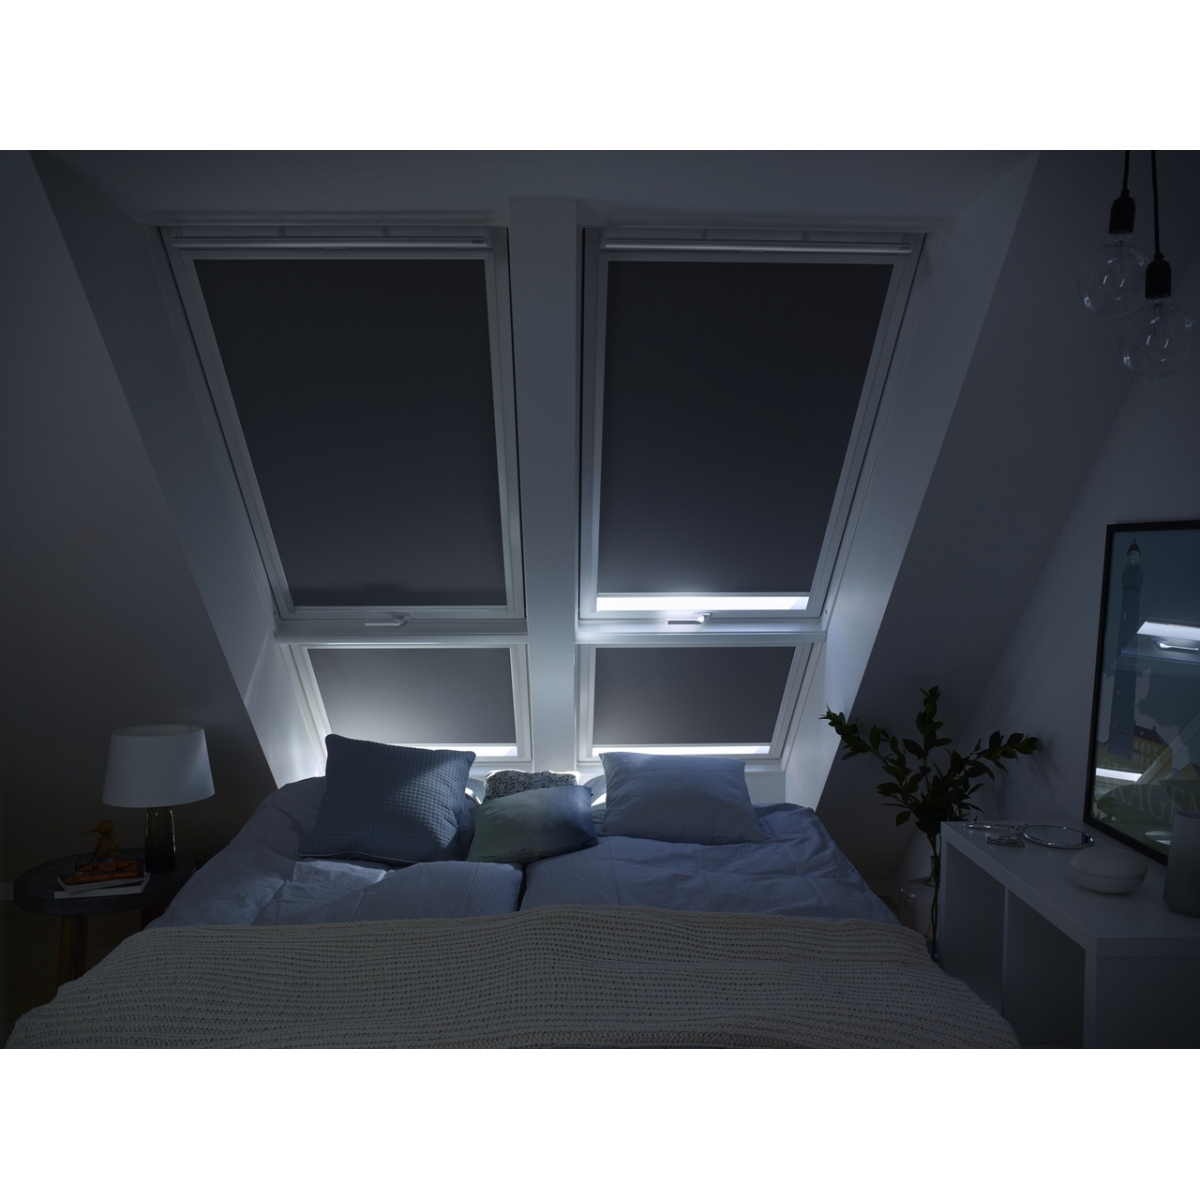 Imagem da cortina cortina blackout manual DKL castanho escuro 4559 Premium